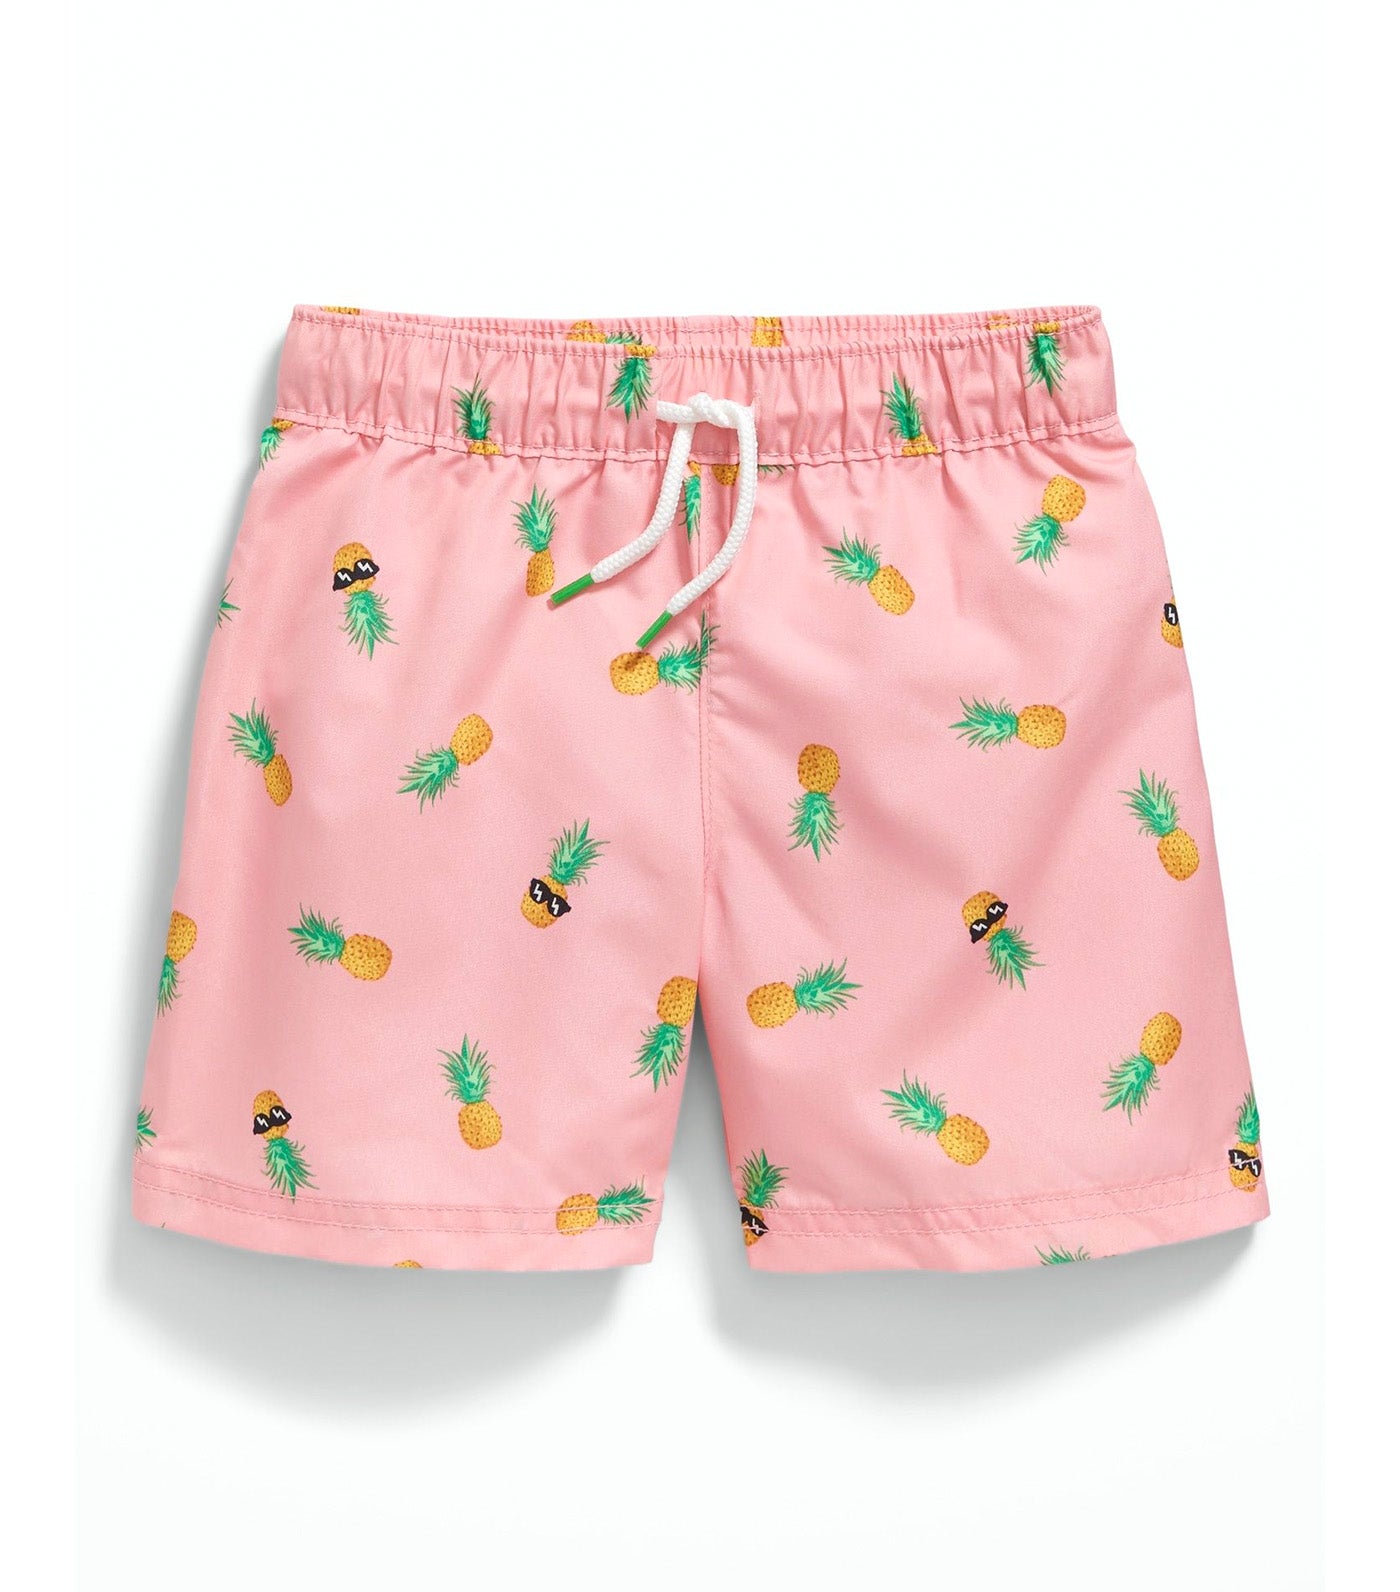 Printed Swim Trunks for Toddler Boys - Pineapples